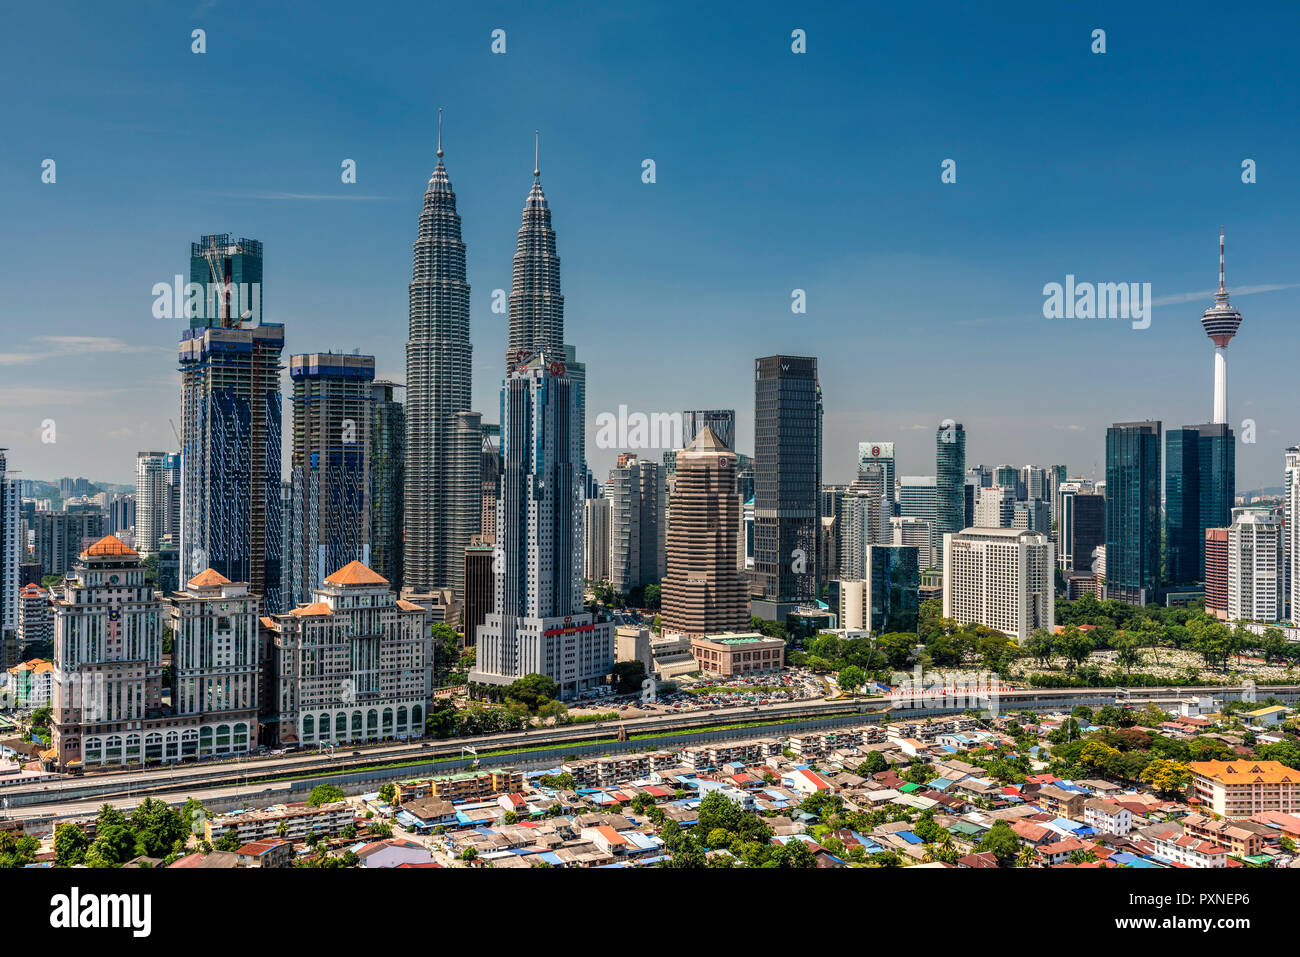 City skyline, Kuala Lumpur, Malaysia Stock Photo